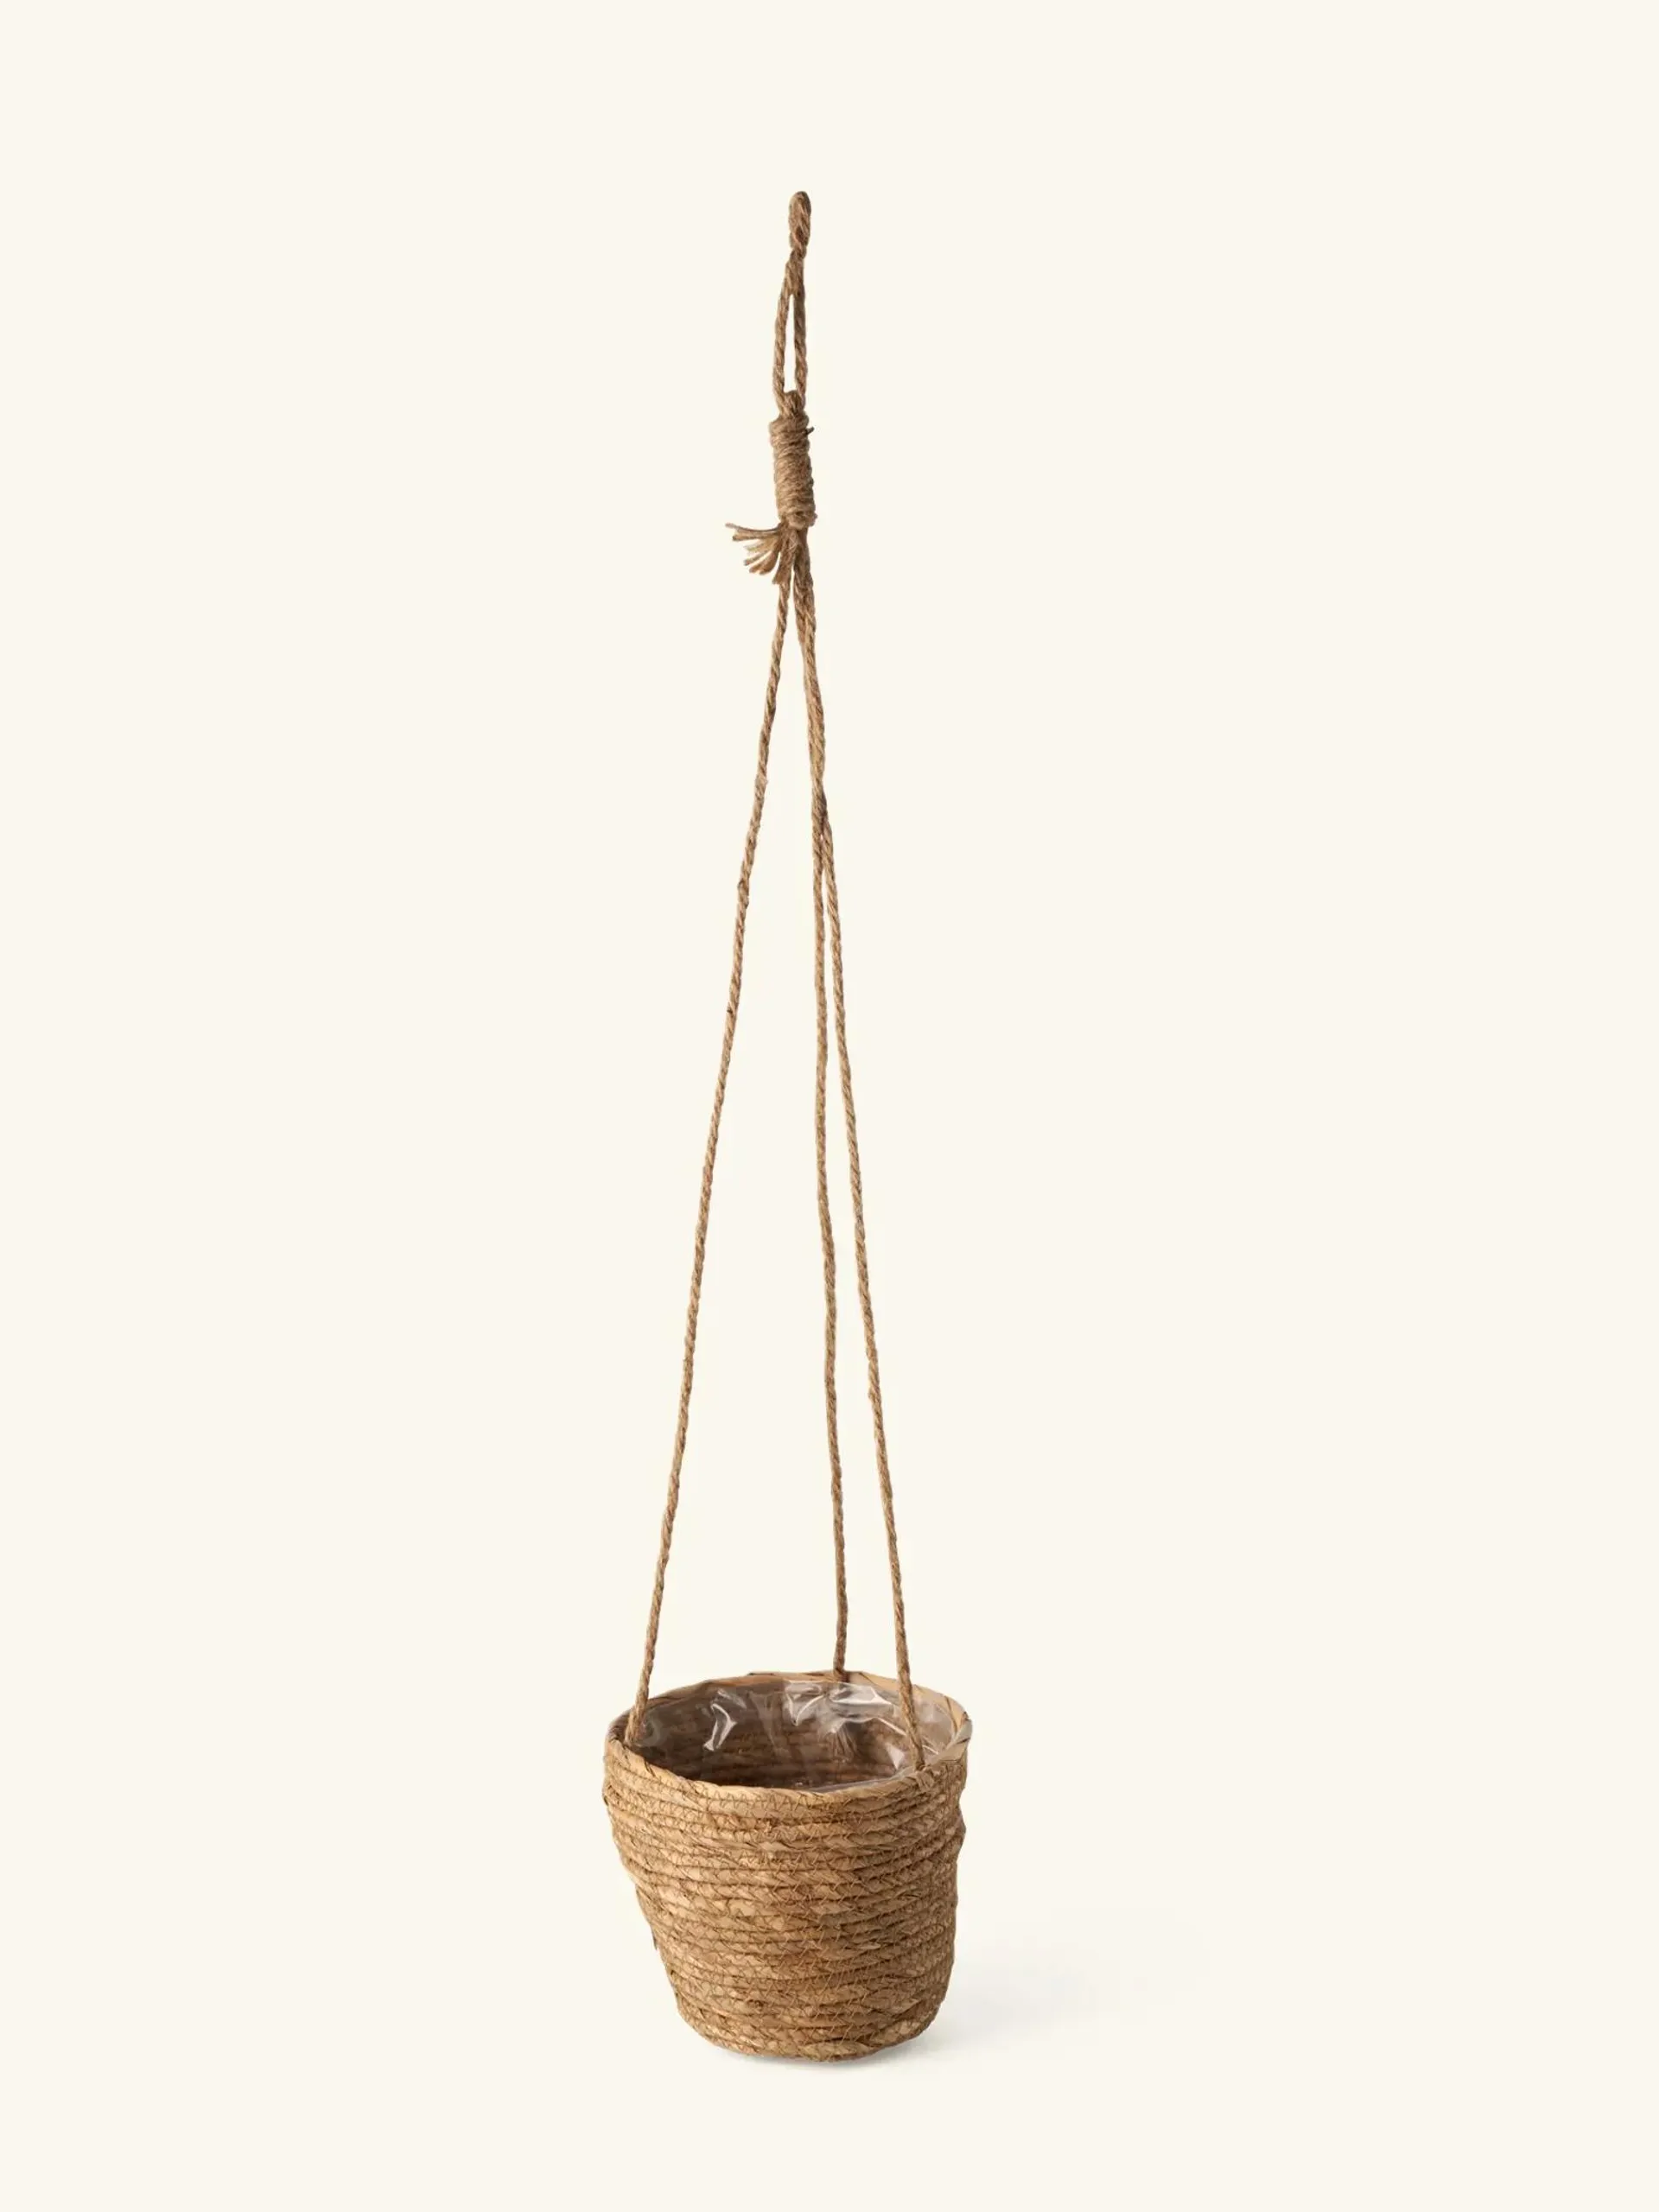 Hanging flowerpot